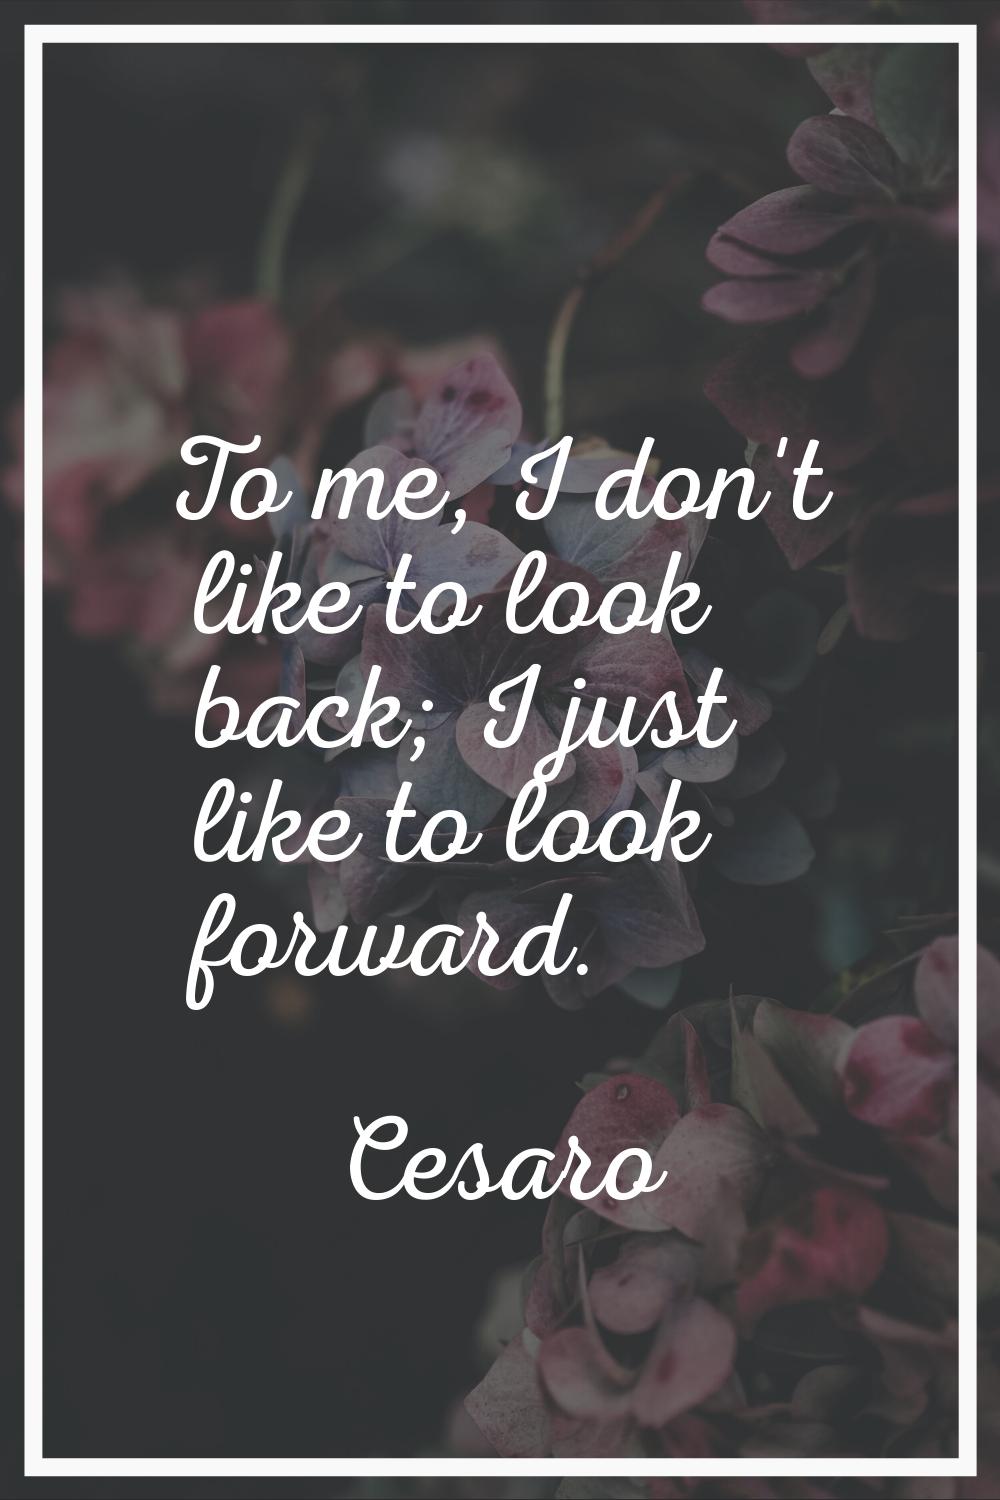 To me, I don't like to look back; I just like to look forward.